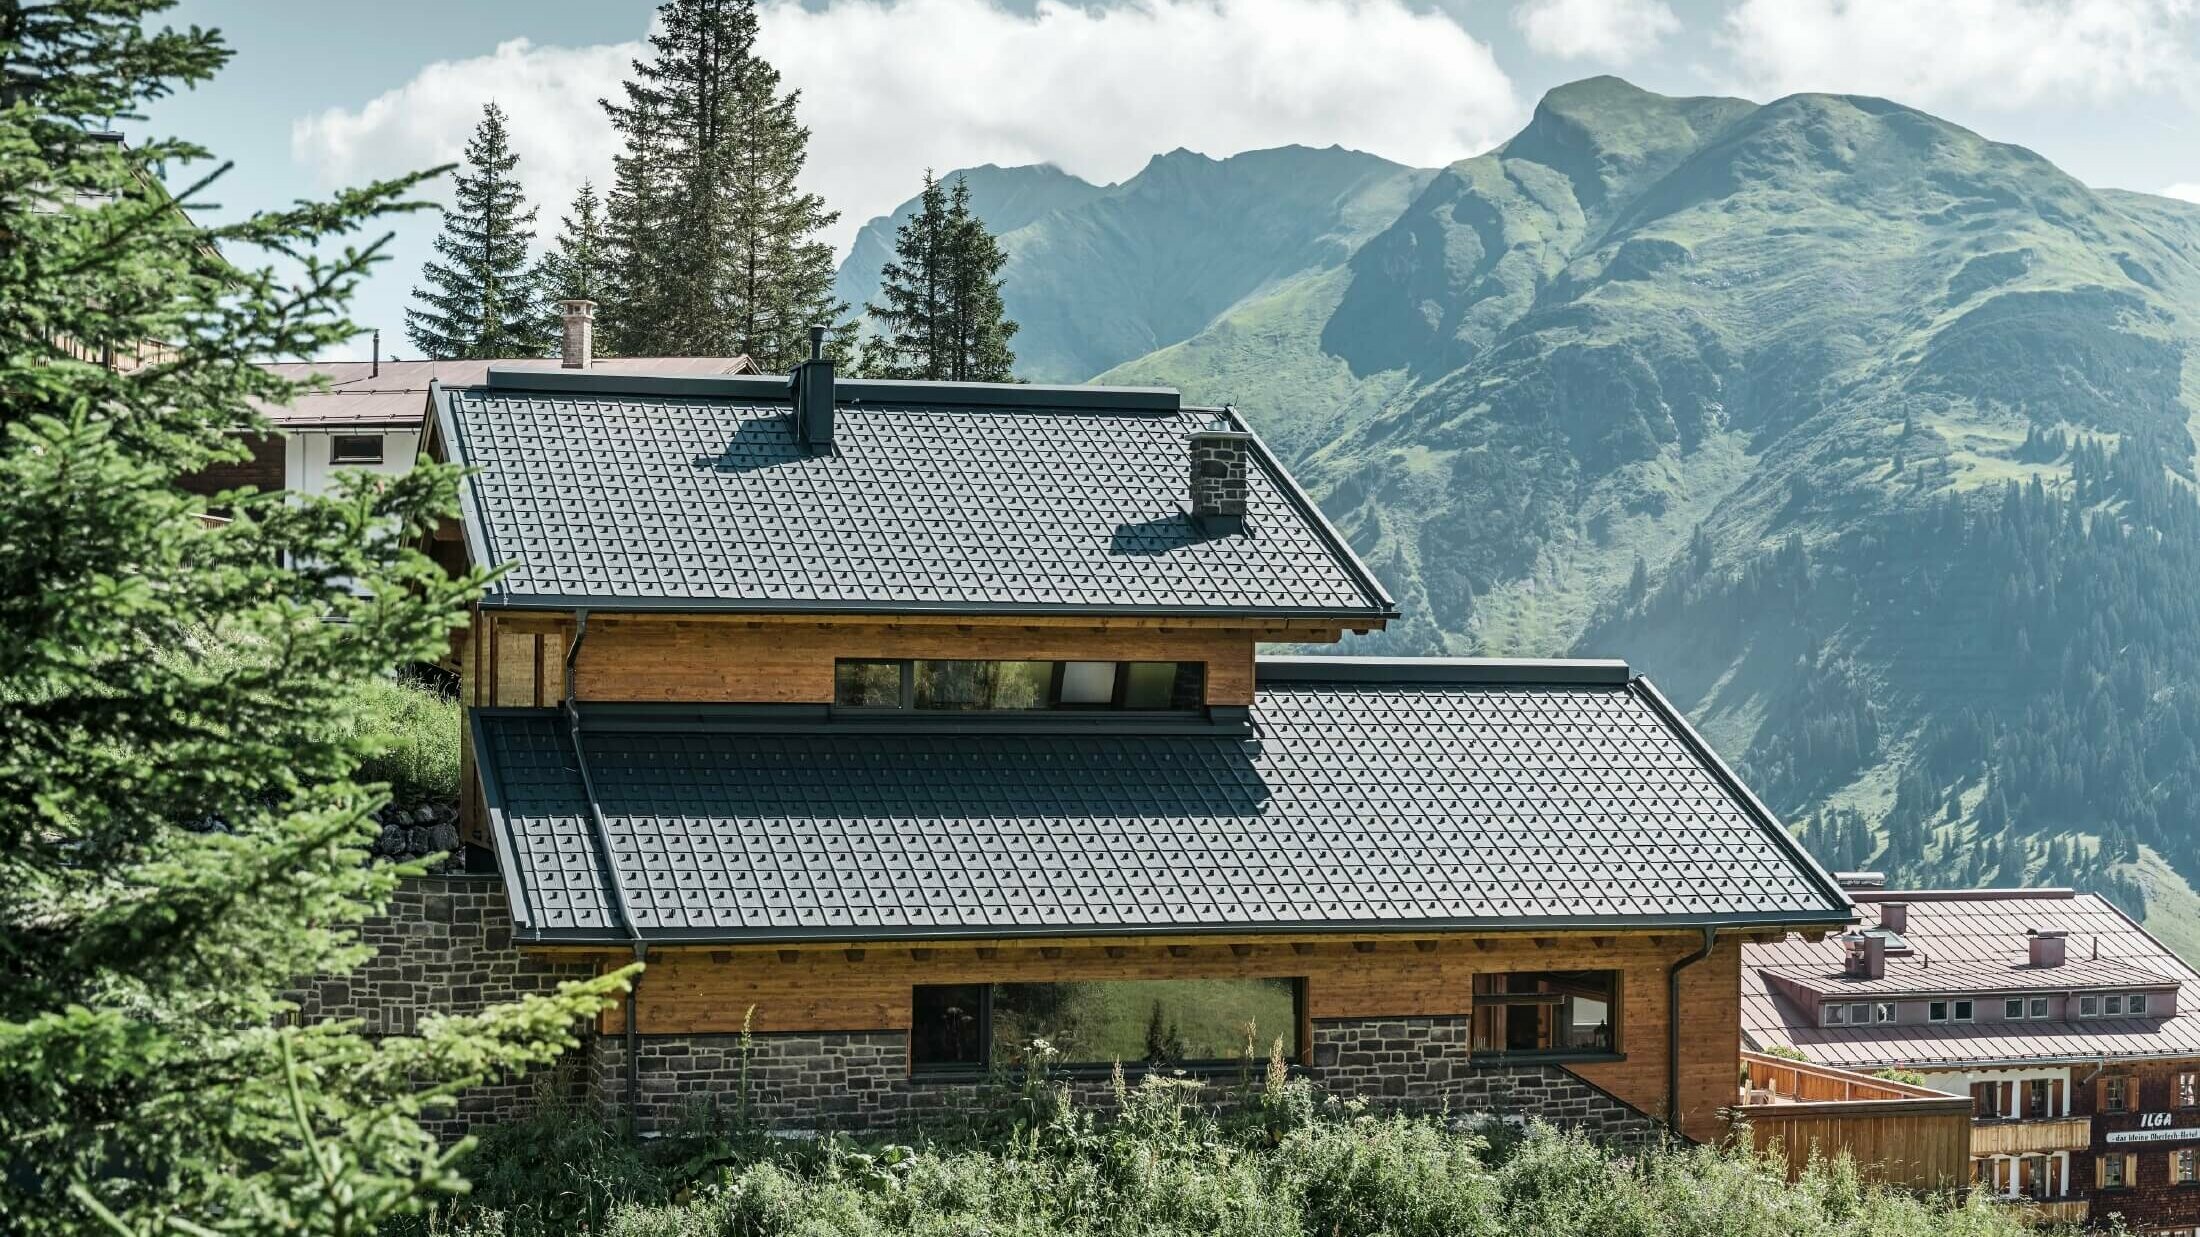 Casa in area alpina con tegole PREFA di colore antracite come copertura del tetto